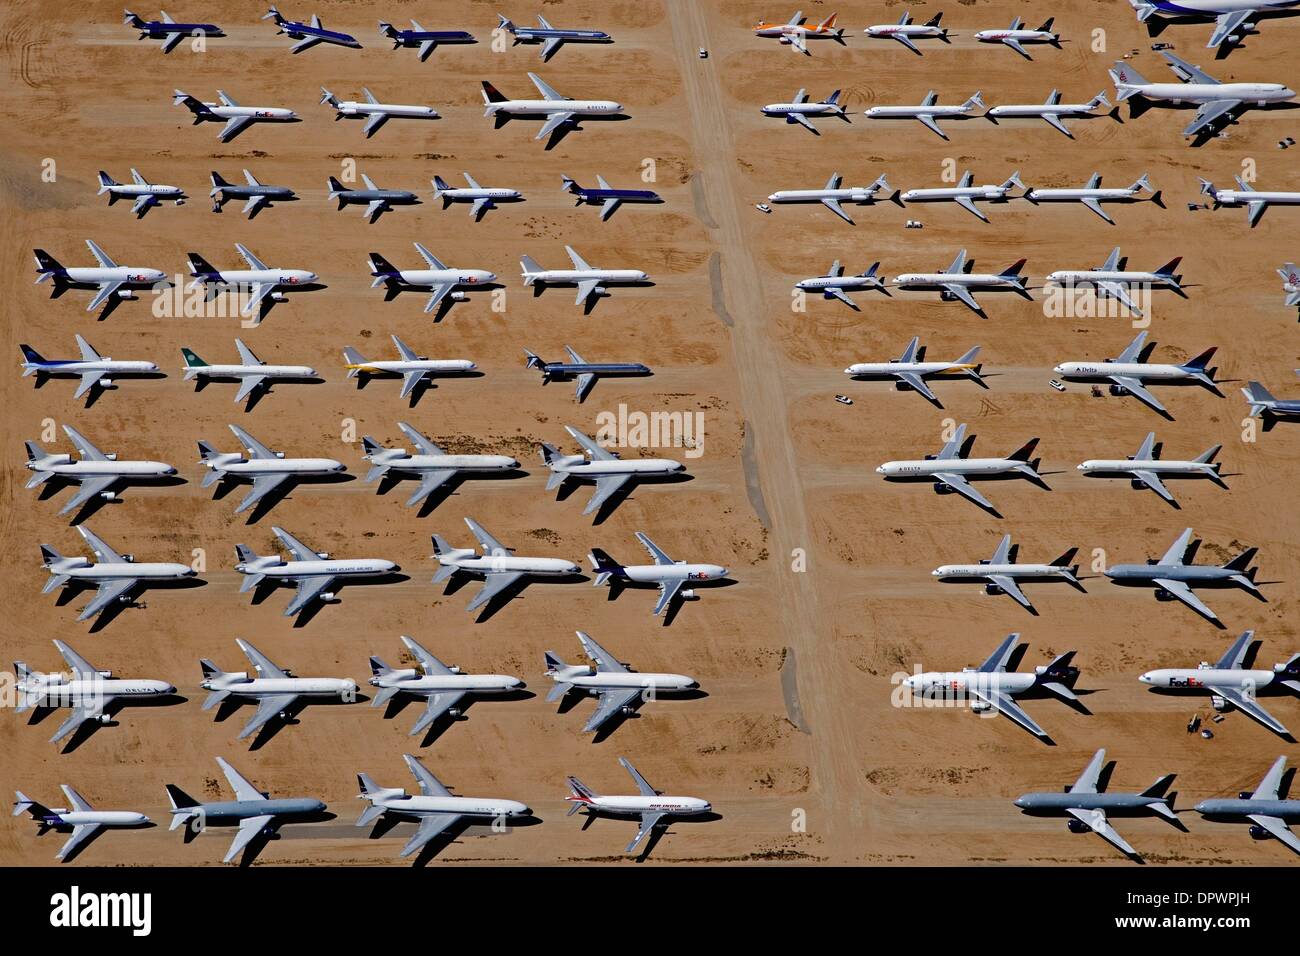 Mar 16, 2009 - Mojave, Californie, États-Unis - vue aérienne des avions mise en sommeil sont alignées en rangées, attendre des jours meilleurs à l'aéroport de Mojave, dans le désert. (Crédit Image : Â© Mark/ZUMApress.com) Holtzman Banque D'Images